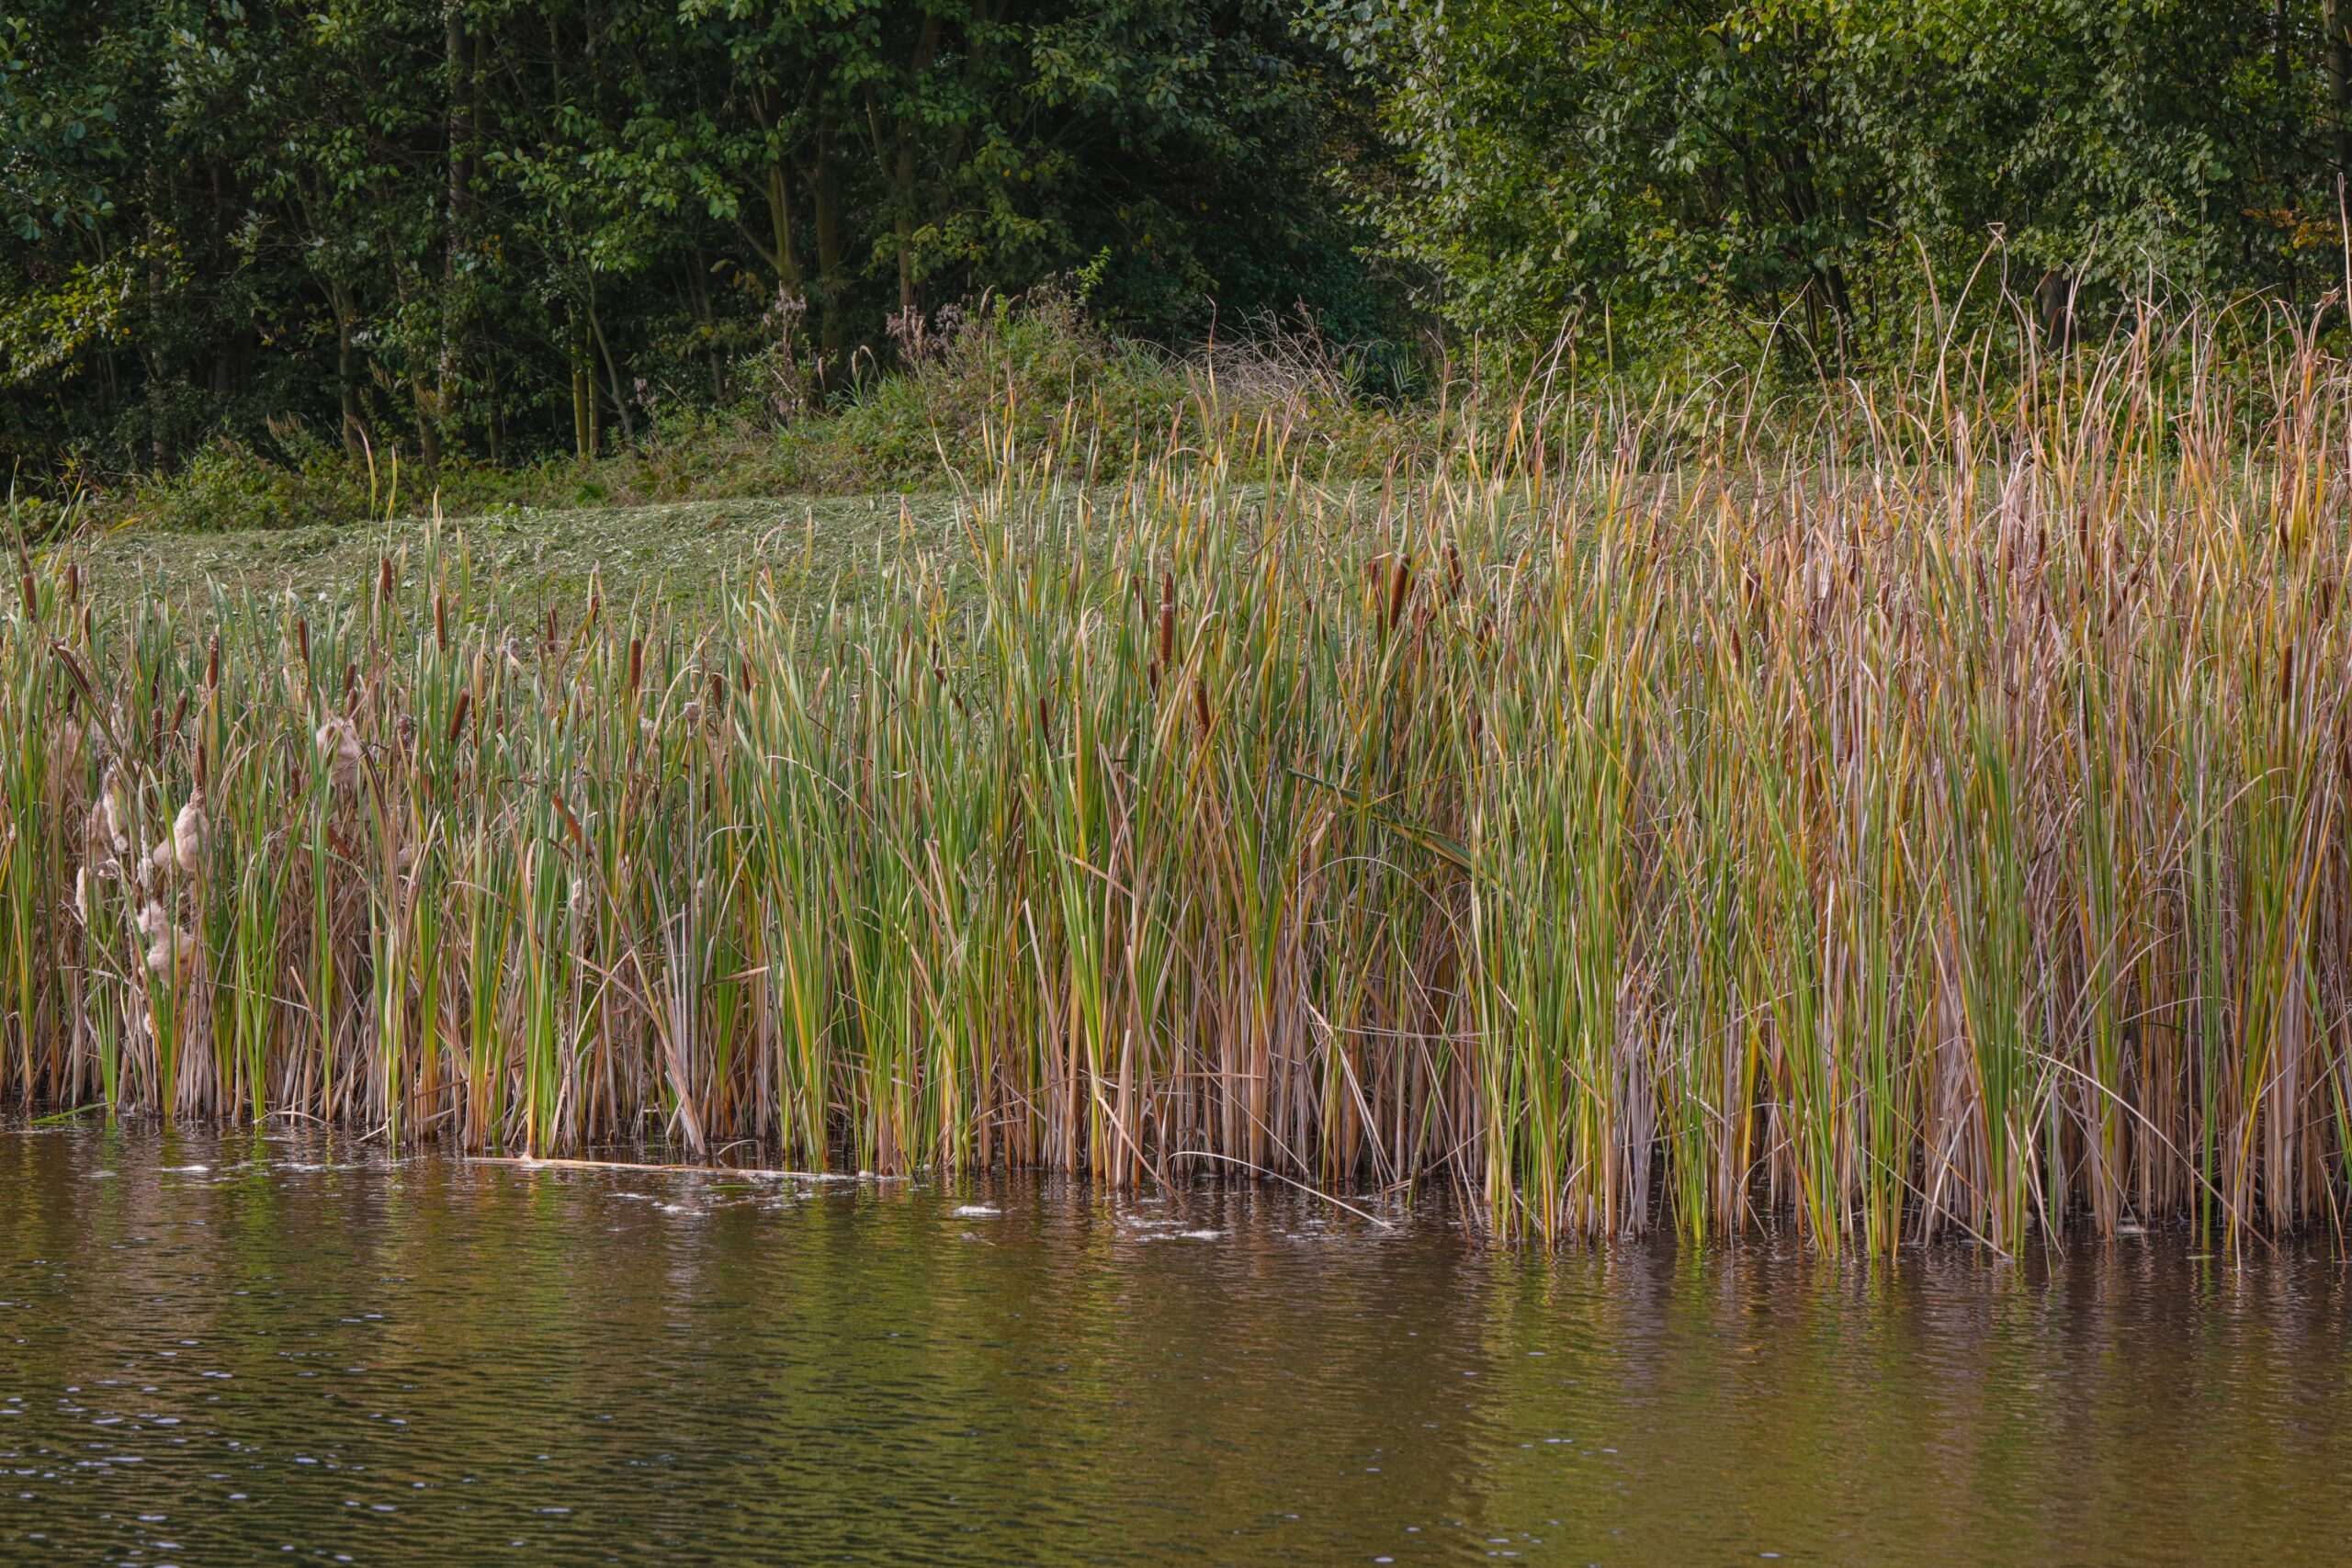 <h1>Orobinec úzkolistý <i>(Typha angustifolia)</i></h1><br />V popředí vodní plocha, navazuje pás rákosin. V pozadí viditelný kosený vyvýšený břeh a za ním souvisle dřeviny.